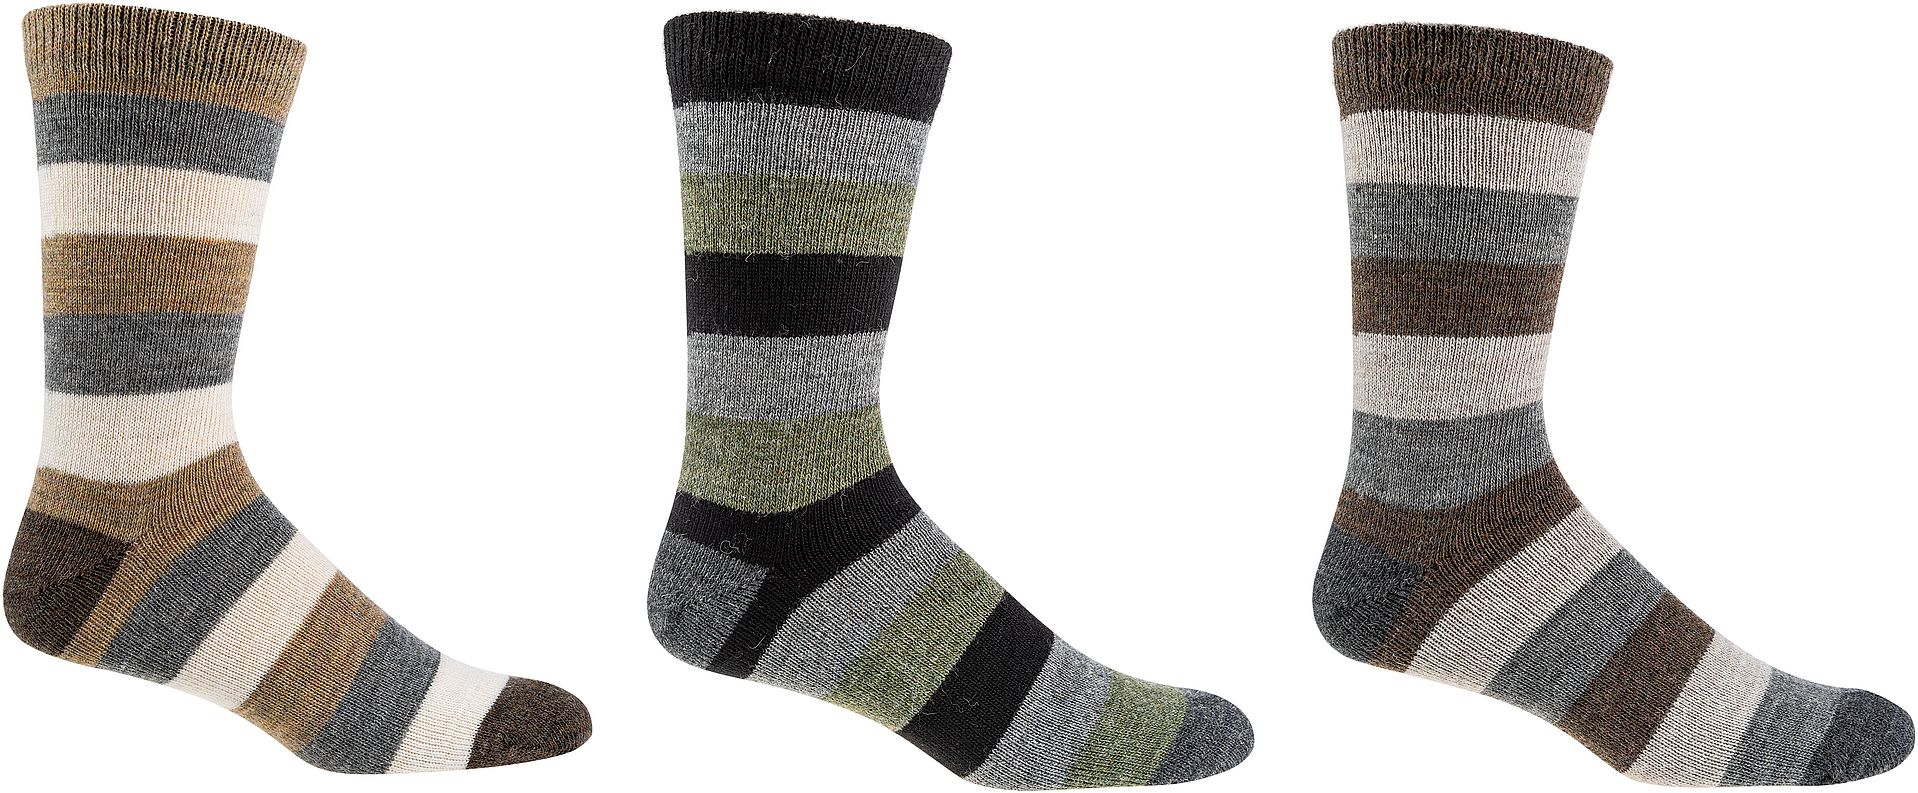 Naturfarben-Socken mit Wolle und Alpaka  3 Paar